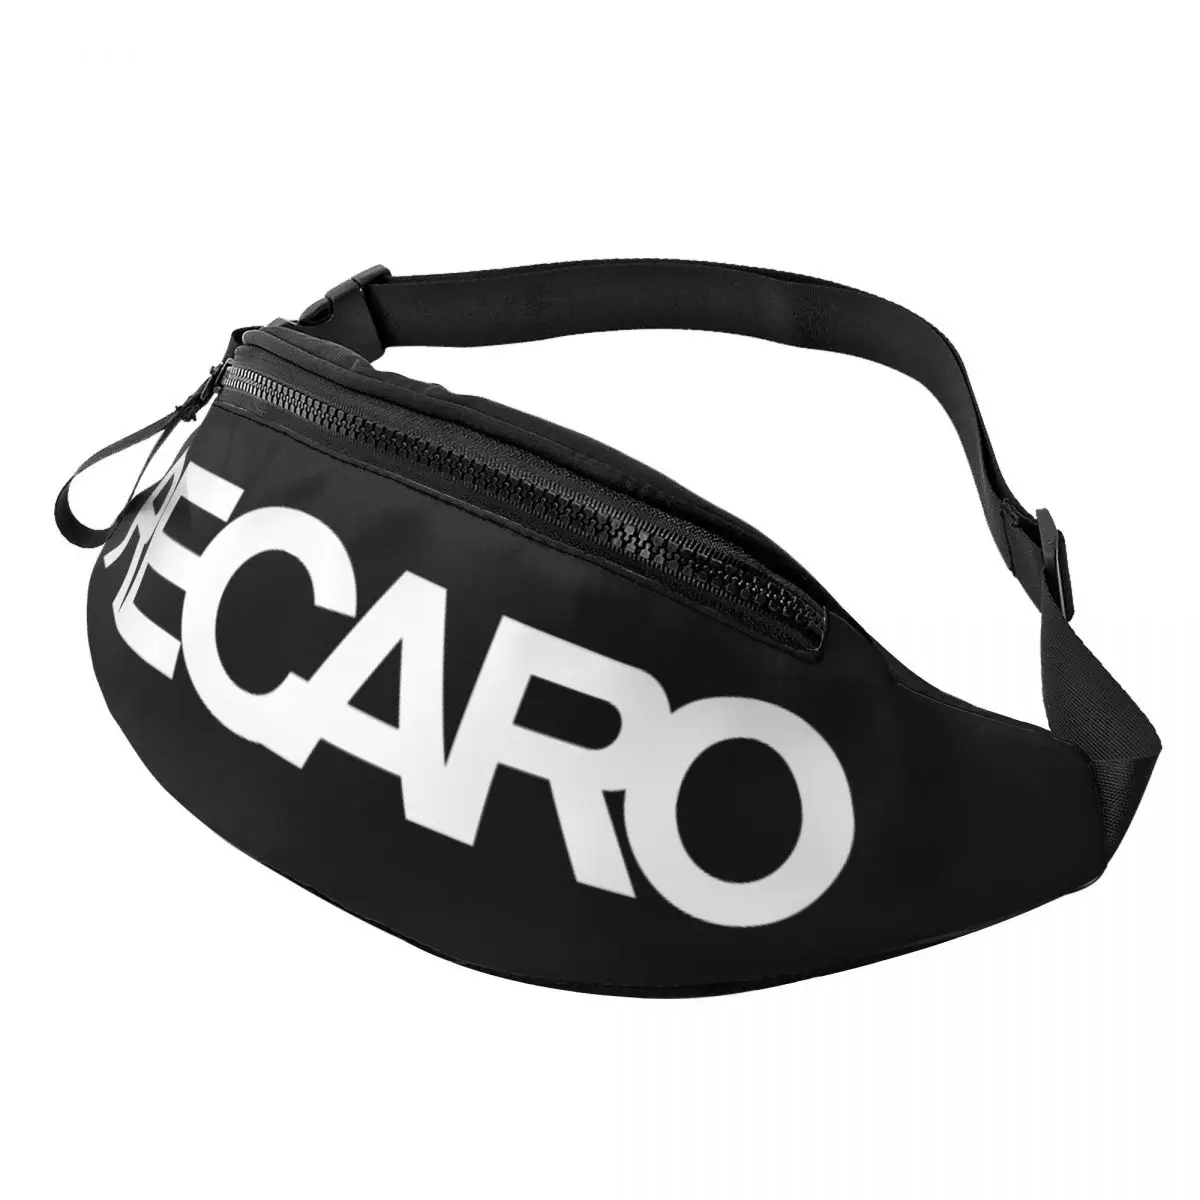 

Забавная сумка с логотипом Recaros для женщин и мужчин, крутая поясная сумочка через плечо для кемпинга, езды на велосипеде, телефона, денег